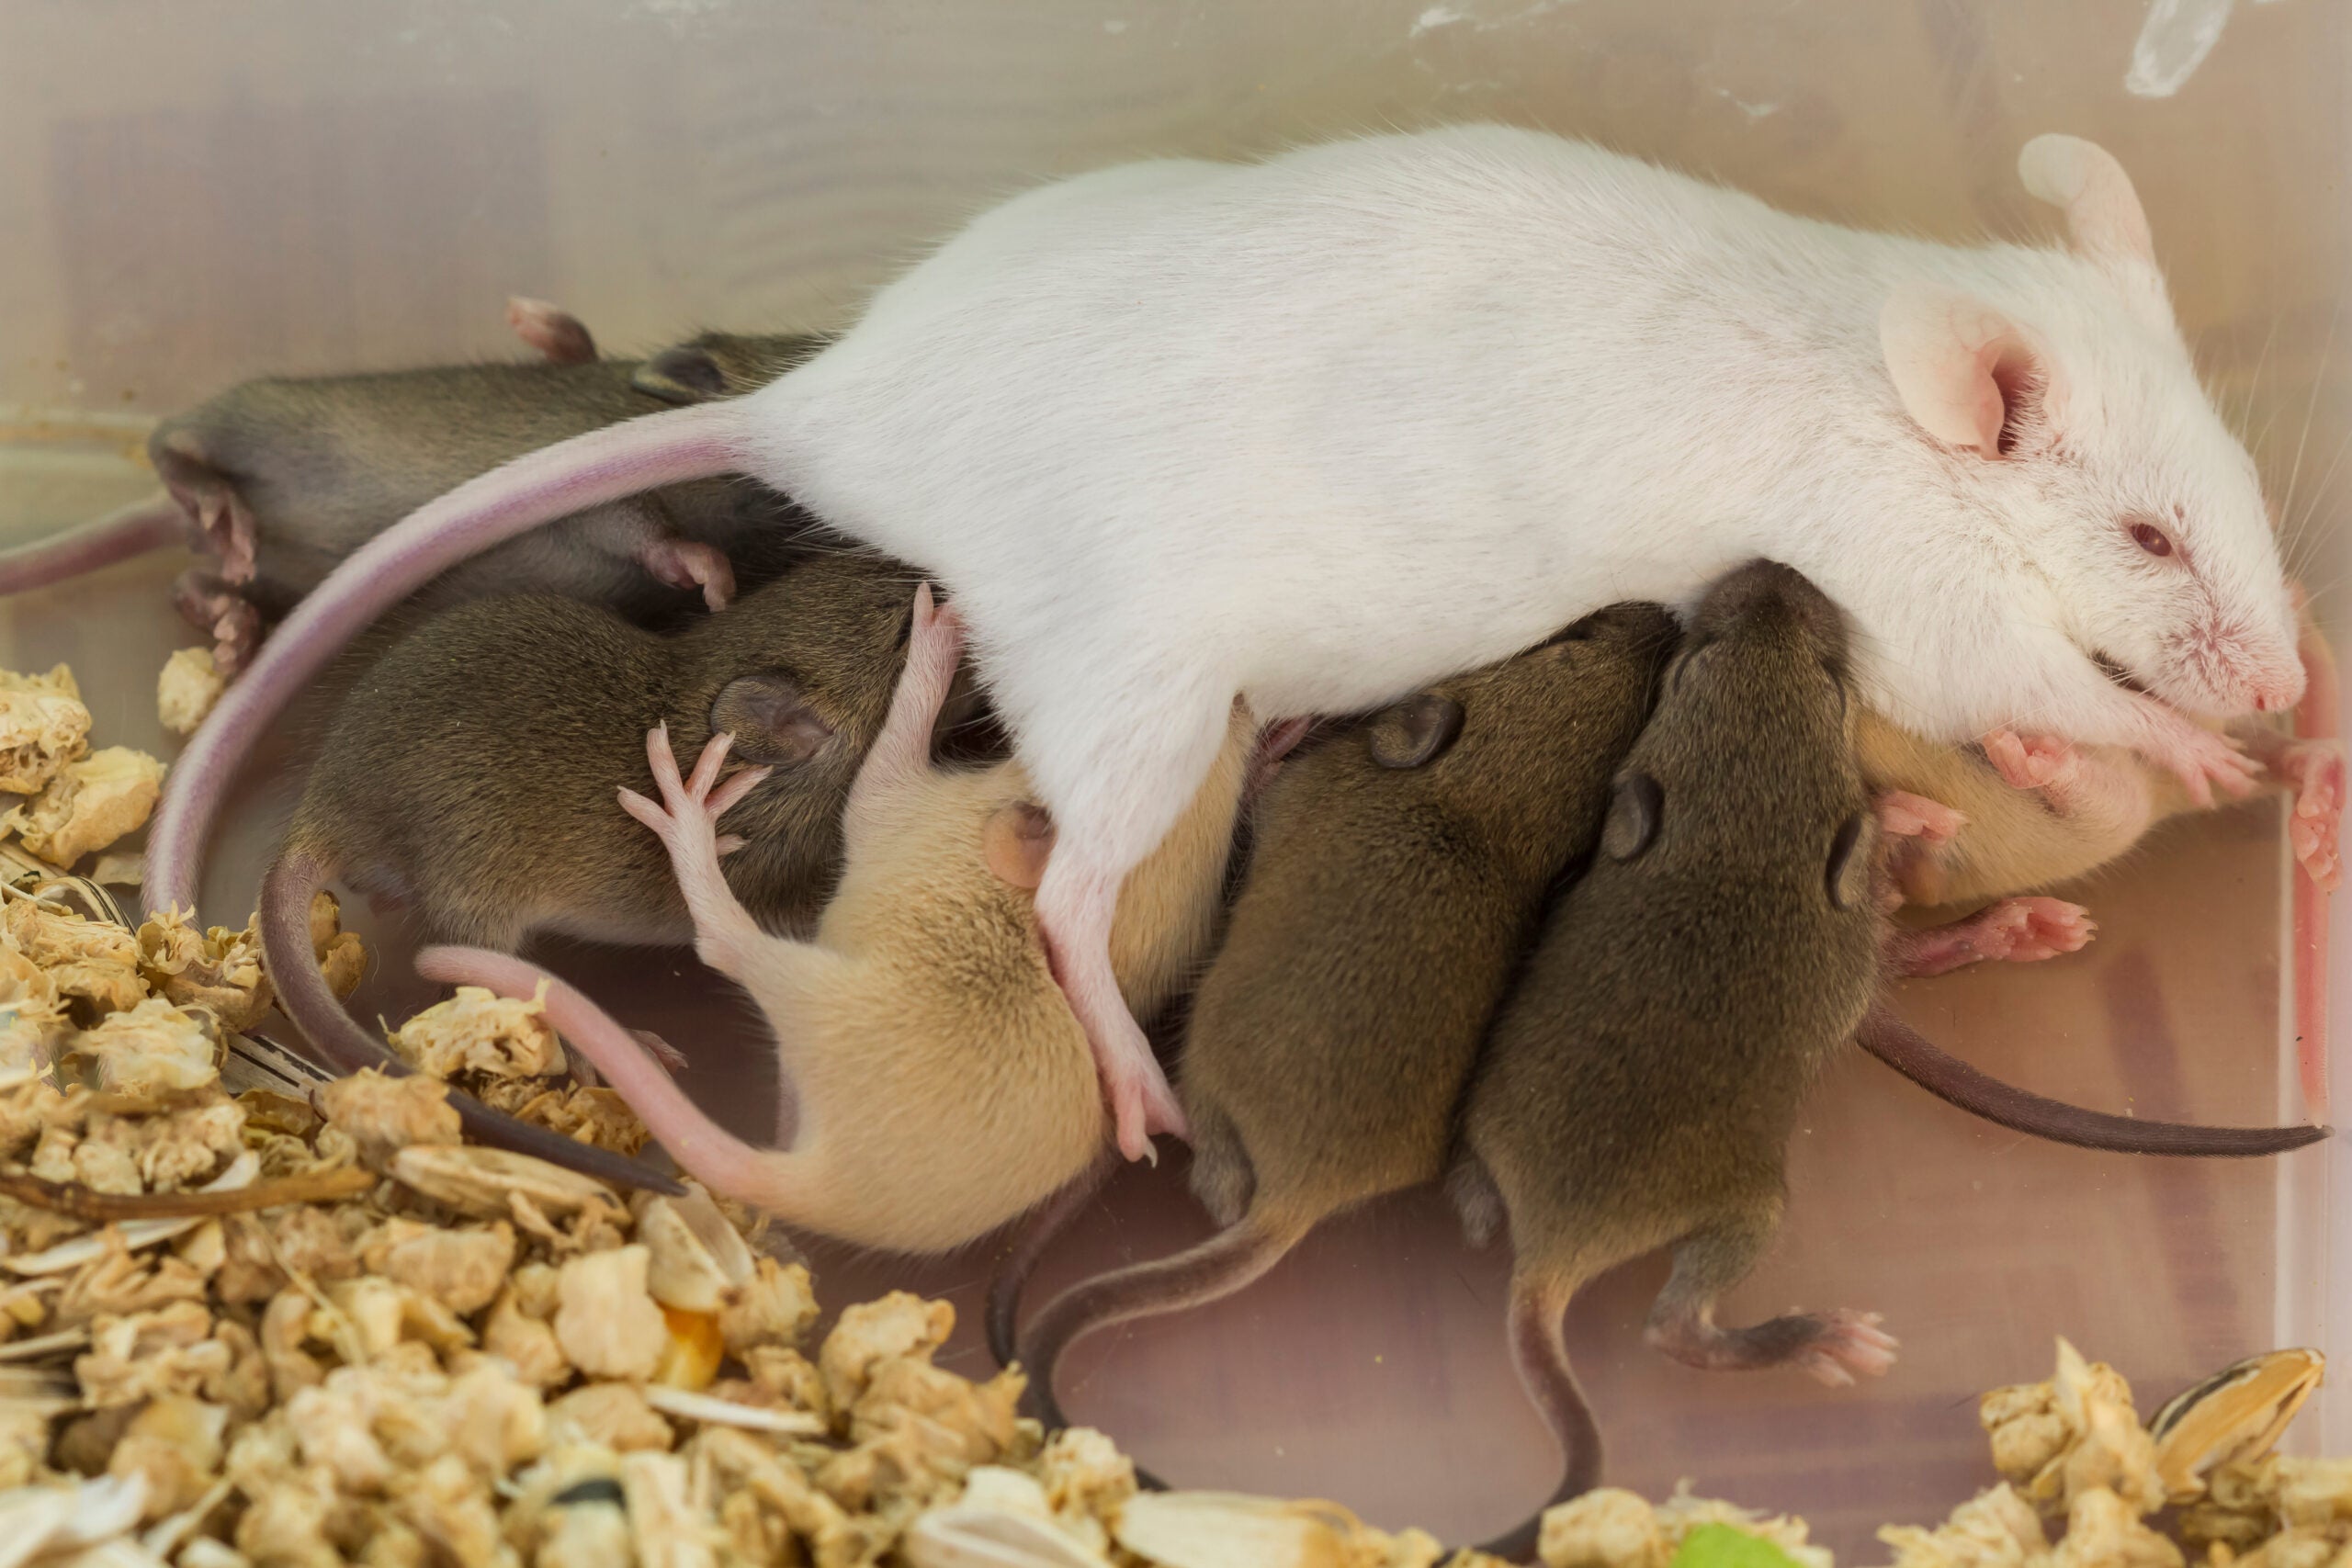 Female rat nursing multiple pups